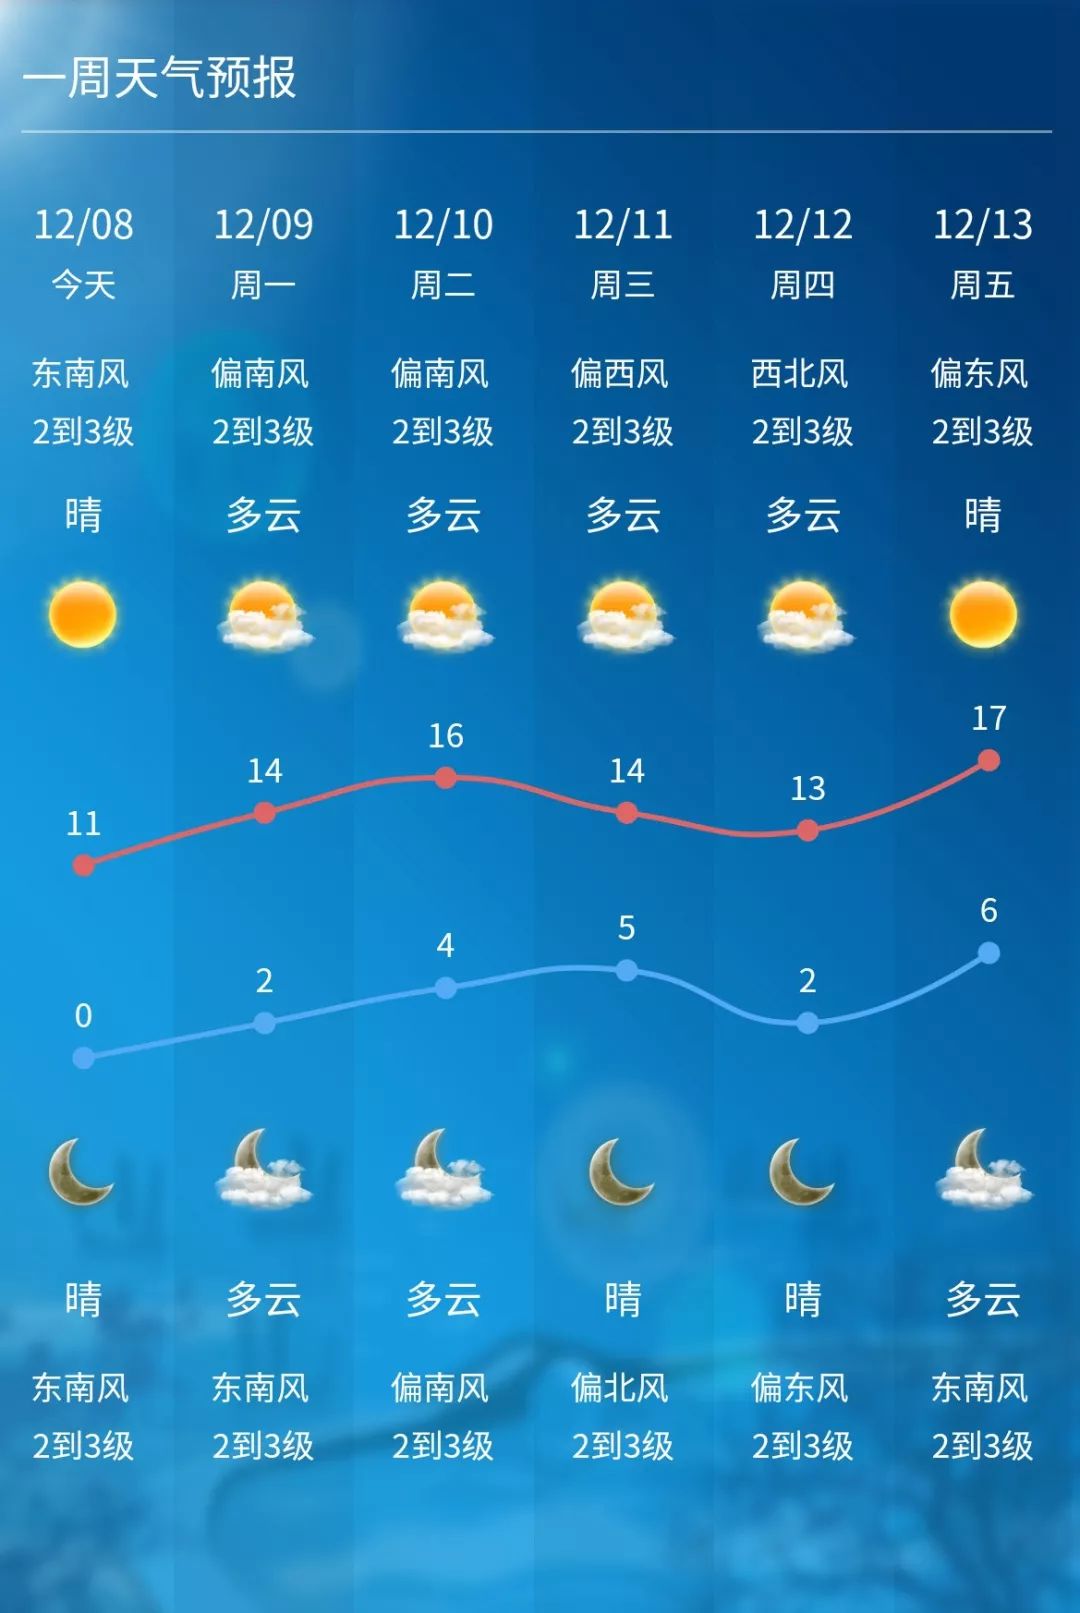 天气回暖,下周无锡最高气温将达17℃